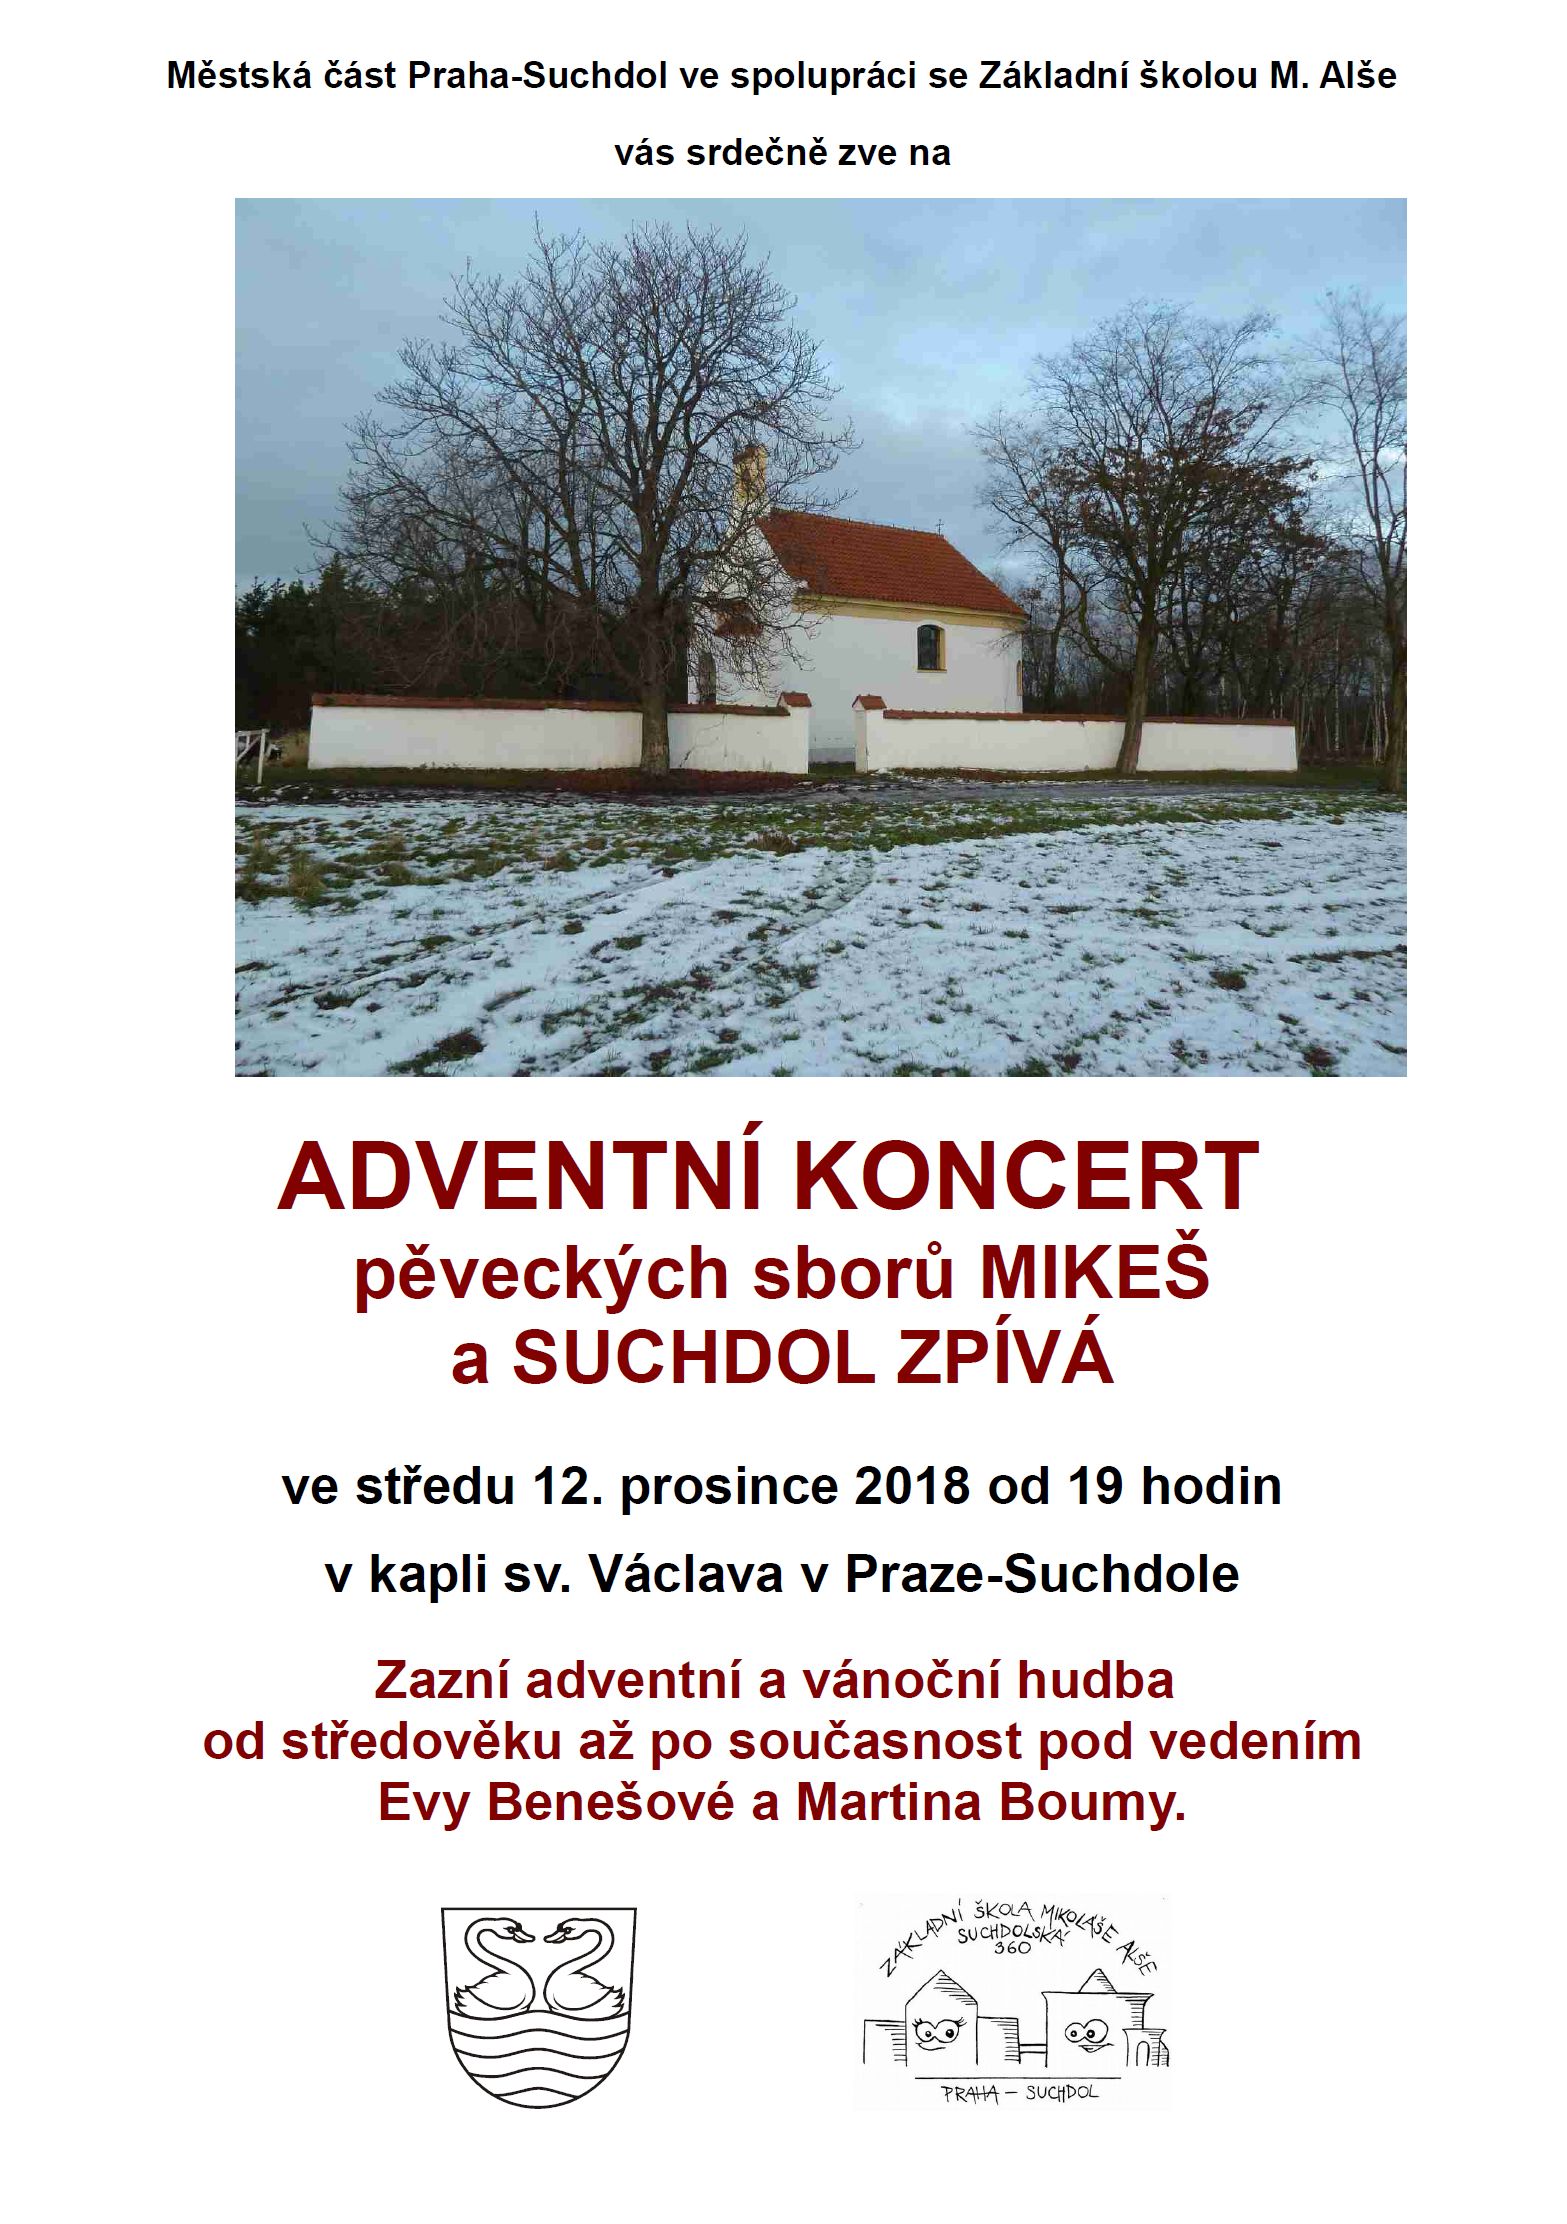 Adventní koncert pěveckých sborů 12.12.2018